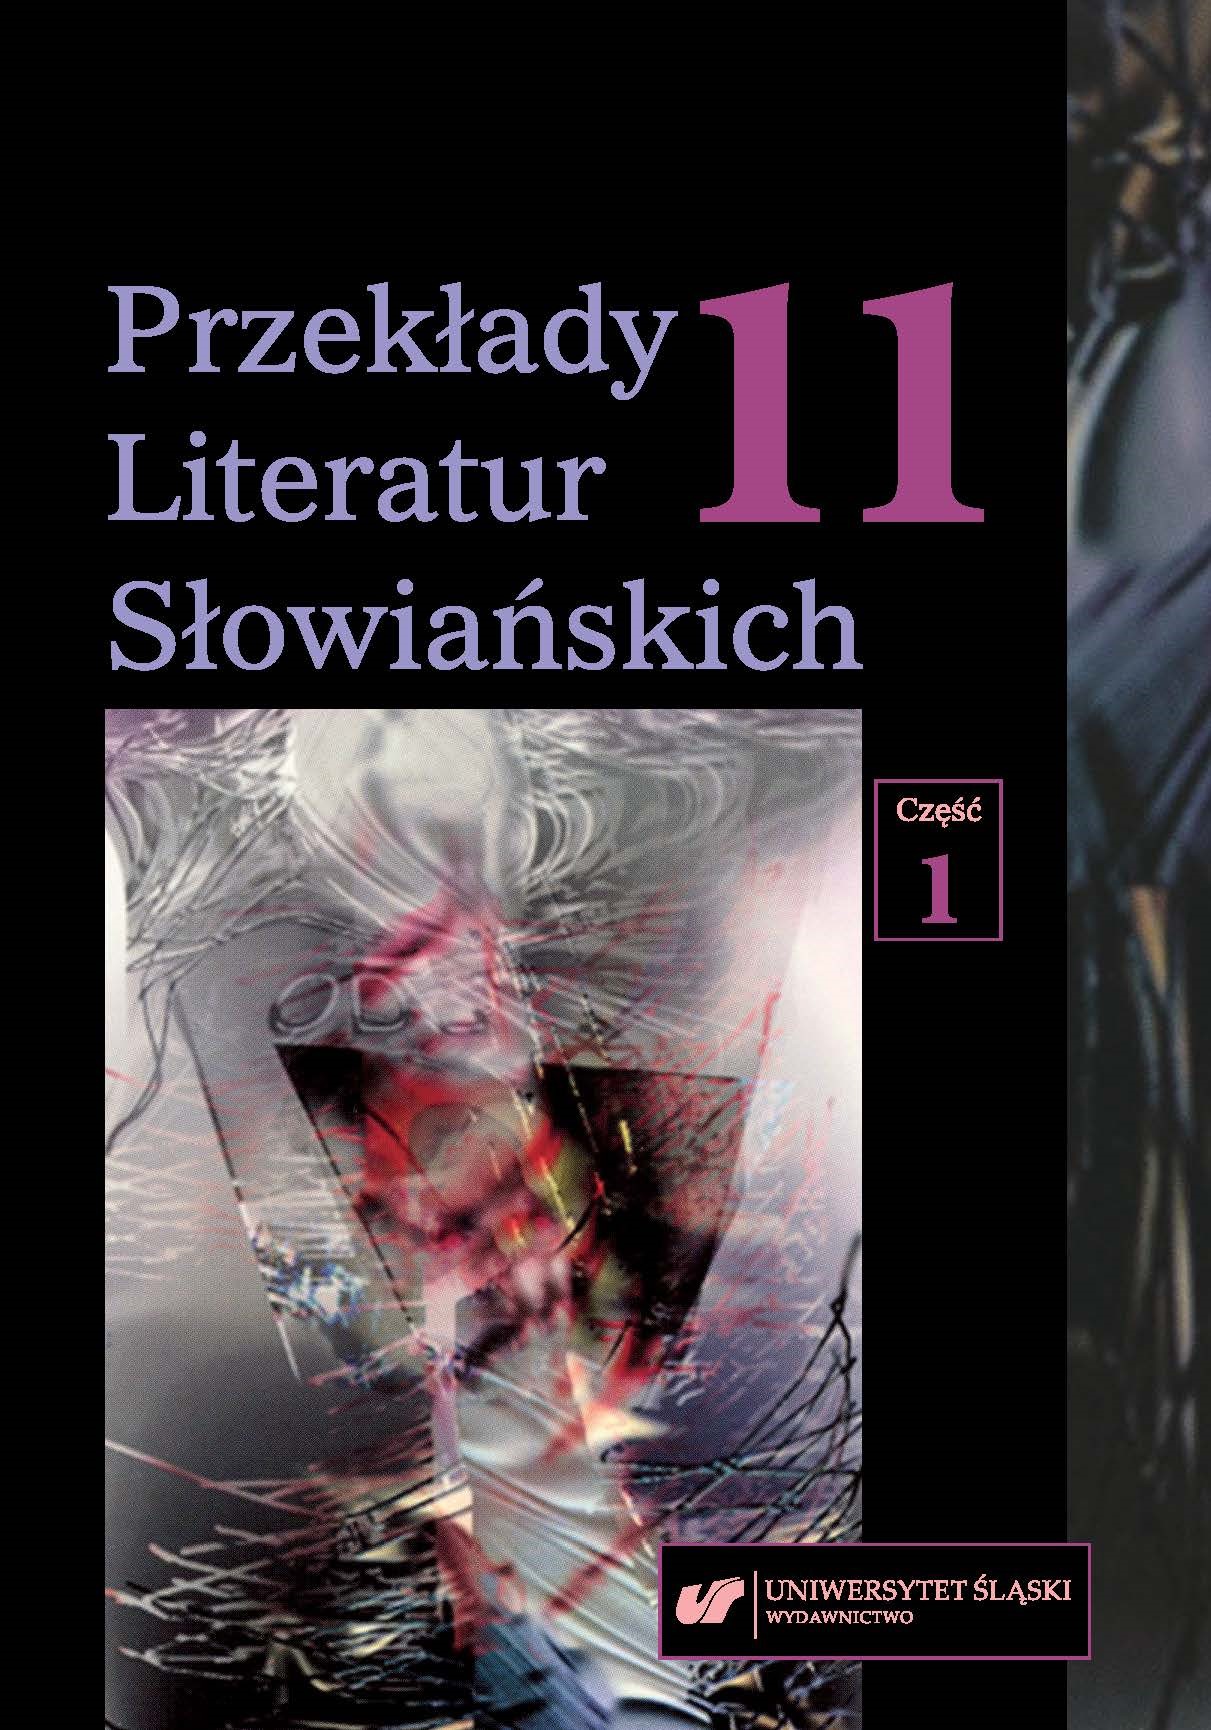 Przekład modernistyczny w kulturach słowiańskich. Kilka uwag wstępnych